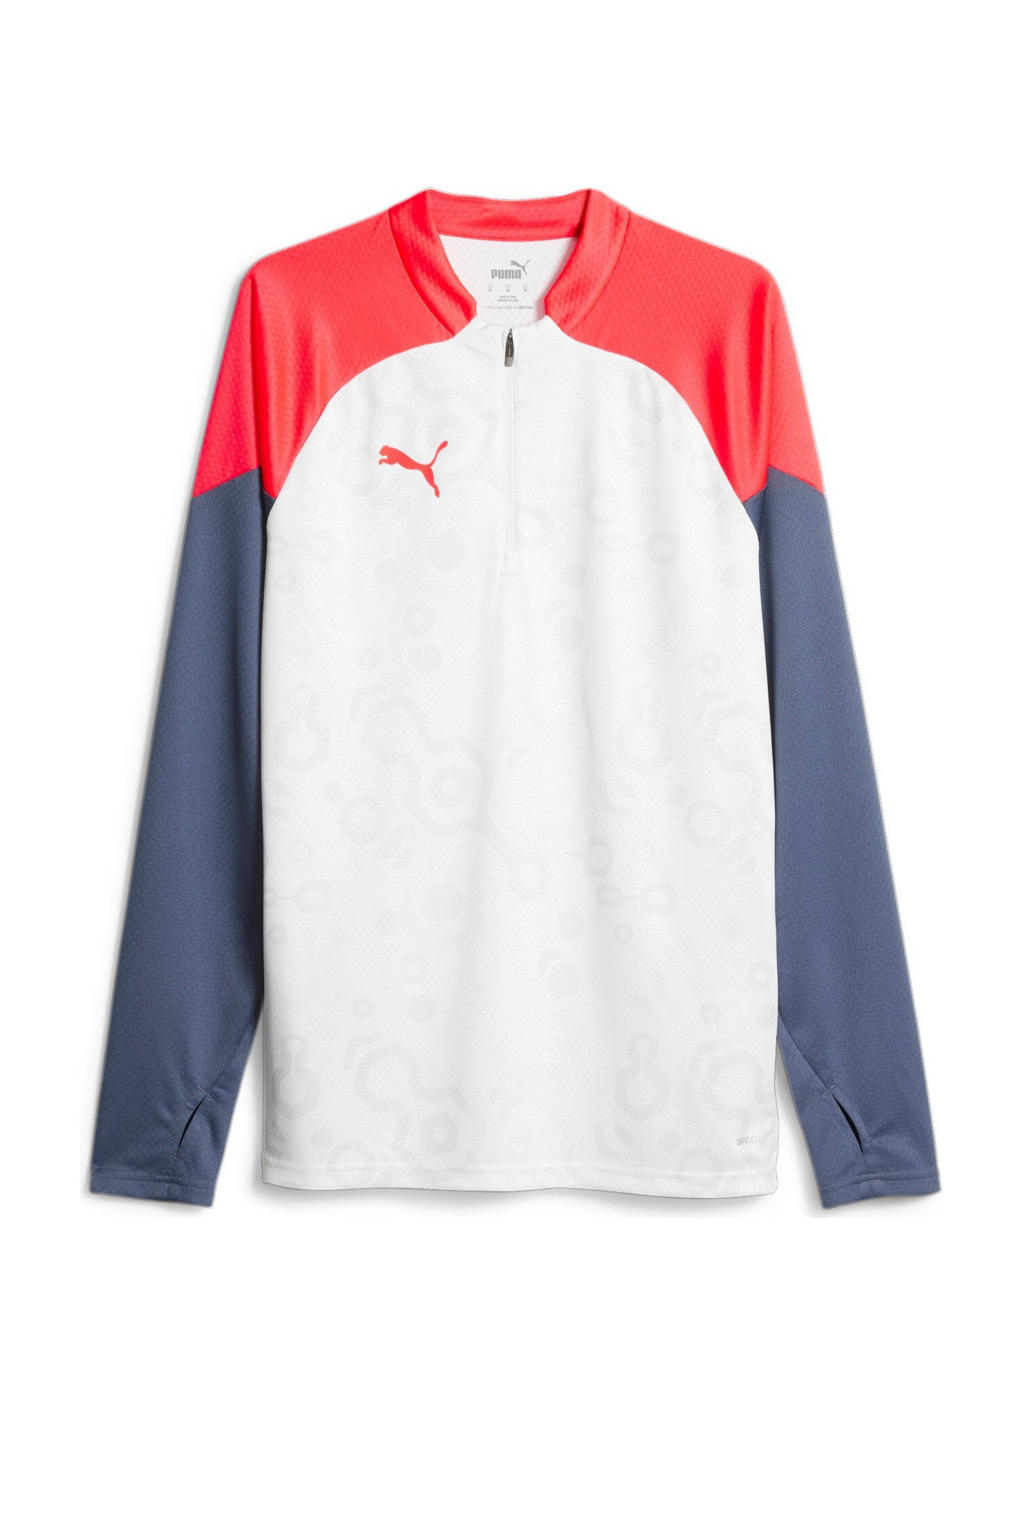 Wit, rood en donkerblauwe heren Puma voetbalshirt van polyester met meerkleurige print, lange mouwen, ronde hals en halve rits